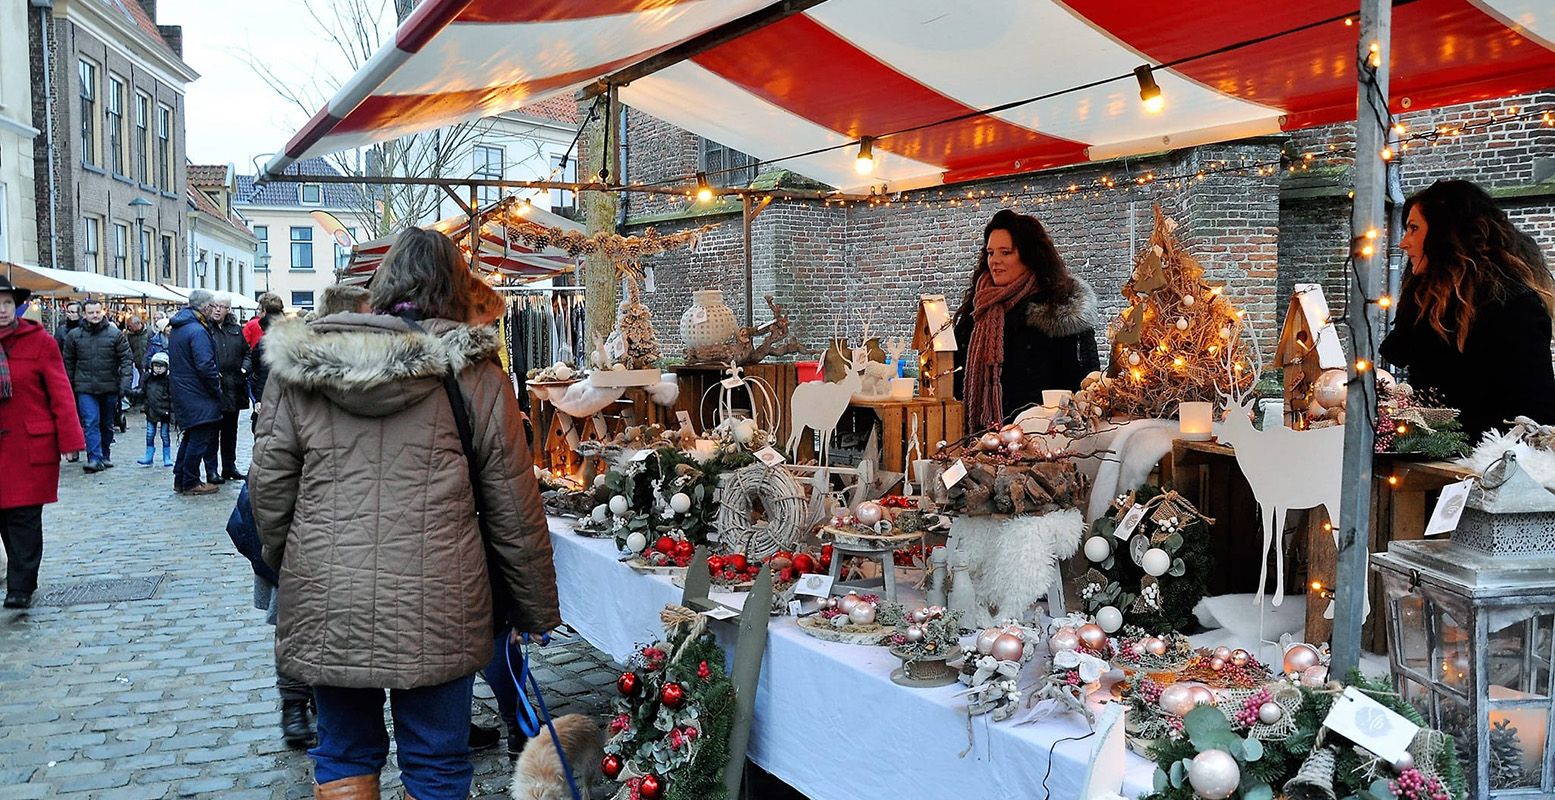 Ook dit jaar is Hattem omgetoverd tot een winterdorp met gezellige kerstmarkt. Foto: Visit Hattem